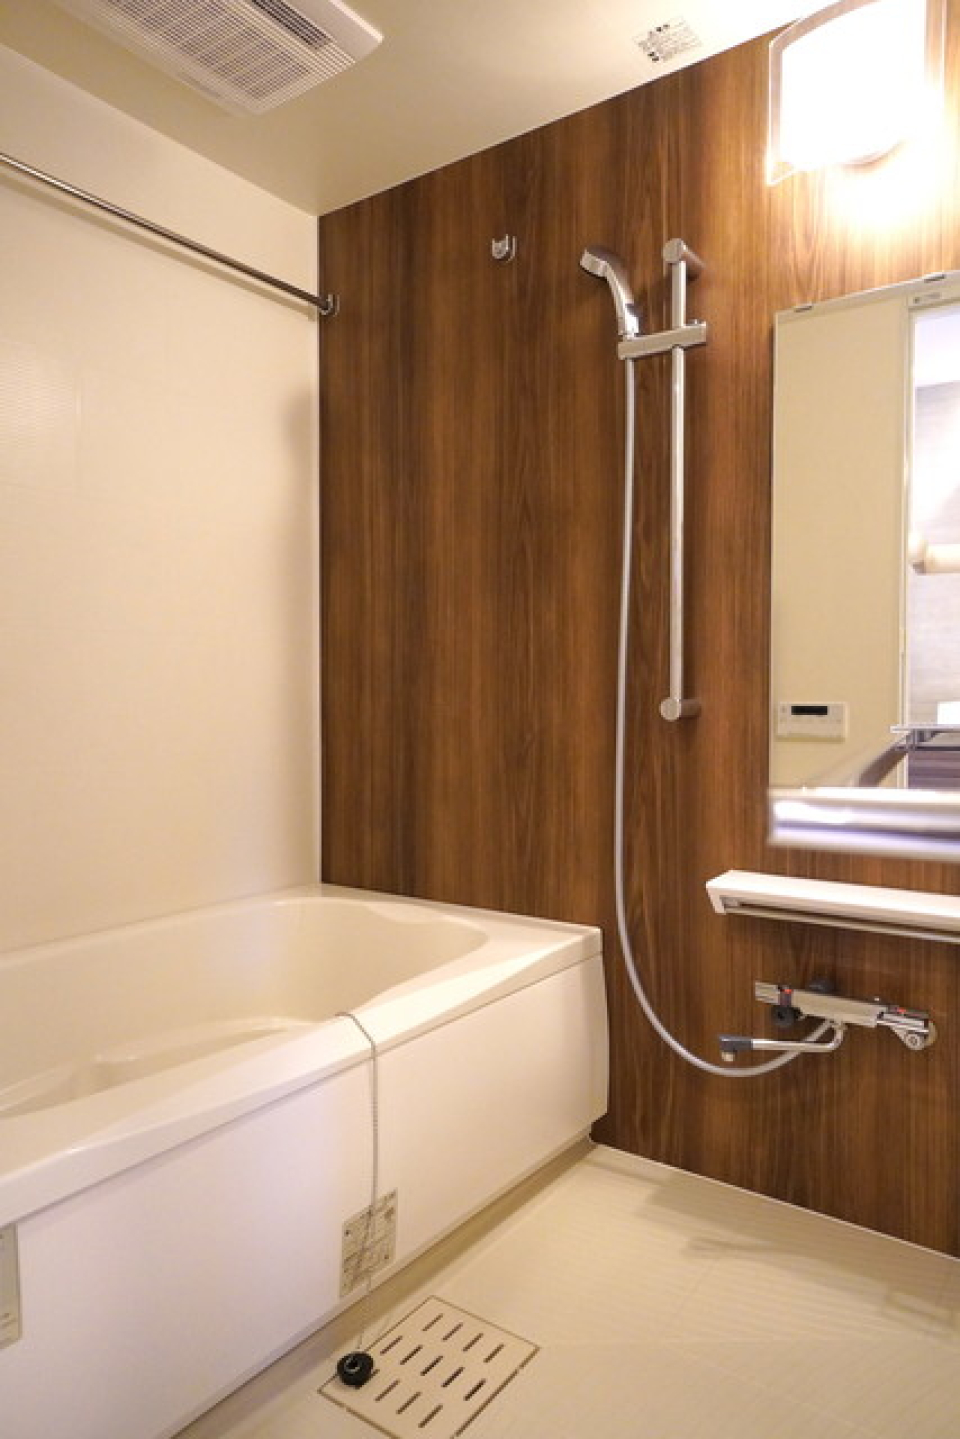 ダークトーンの木目調のパネルが導入されている浴室の様子。※写真は同タイプ住戸です。